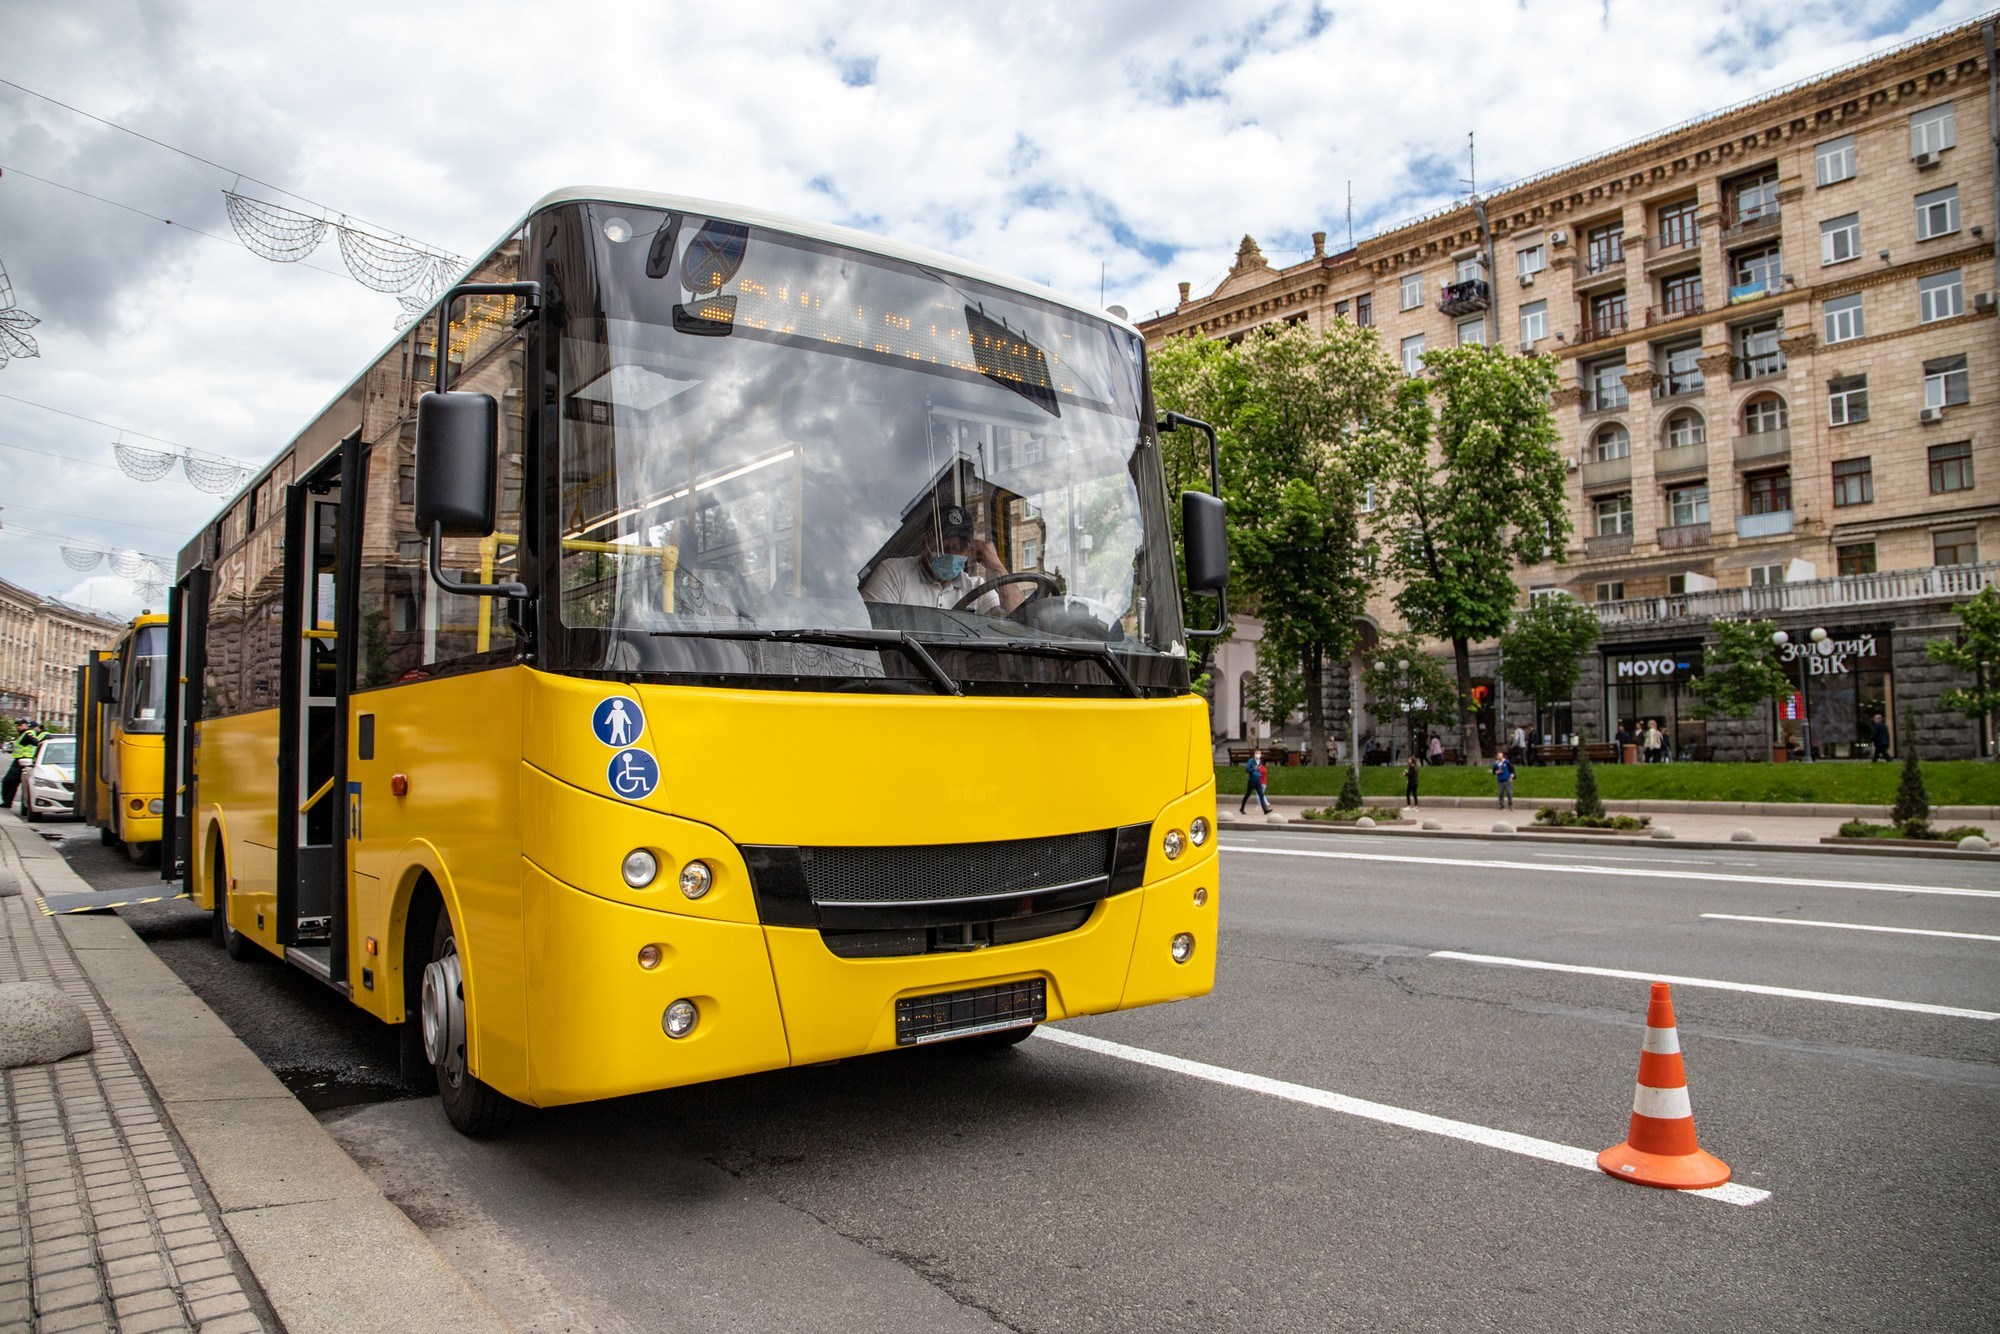 Для полной замены всех столичных маршруток на автобусы нужно не менее 15 миллиардов гривен